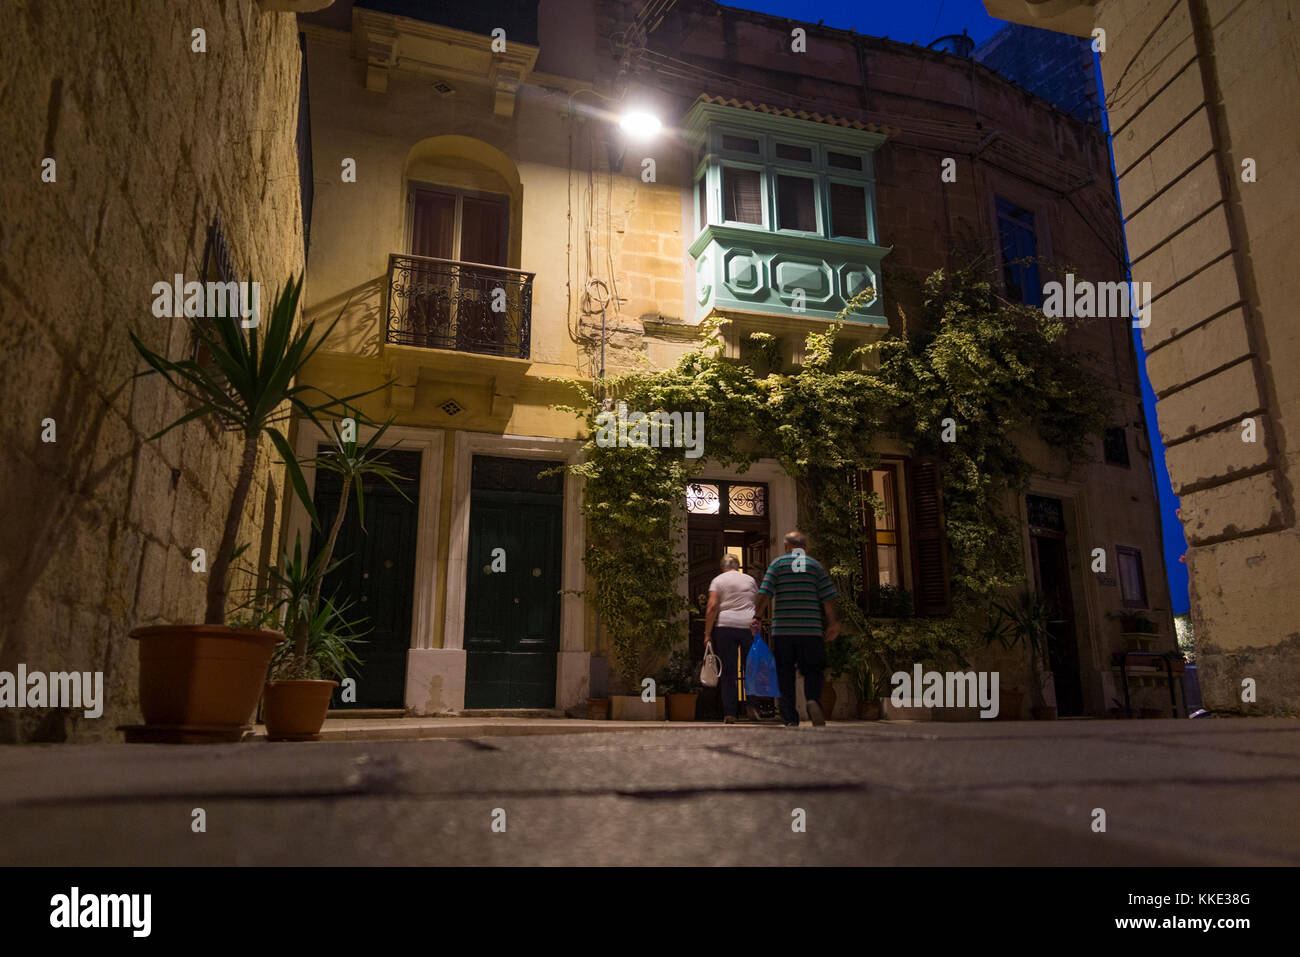 Paar/Menschen kommen in ruhigen Straßen & Straßen von Portomaso, Malta, am frühen Abend/Nacht. Birgu ist auch durch seine Titel Città Vittoriosa bekannt. Stockfoto